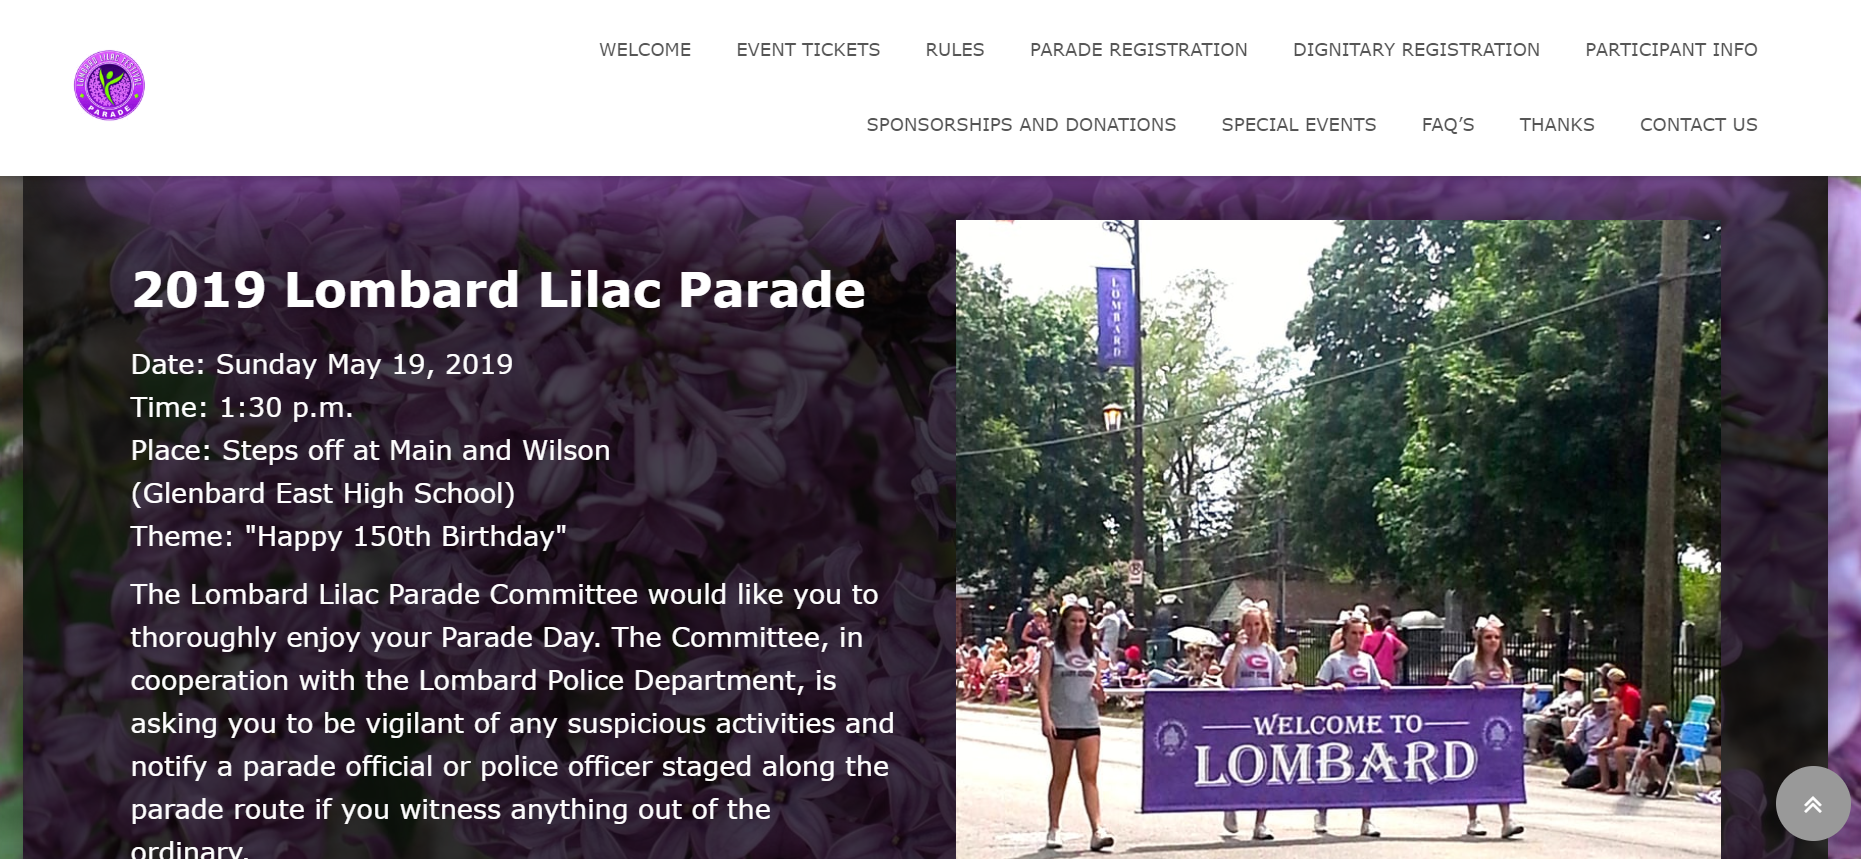 Lombard Lilac Festival Parade